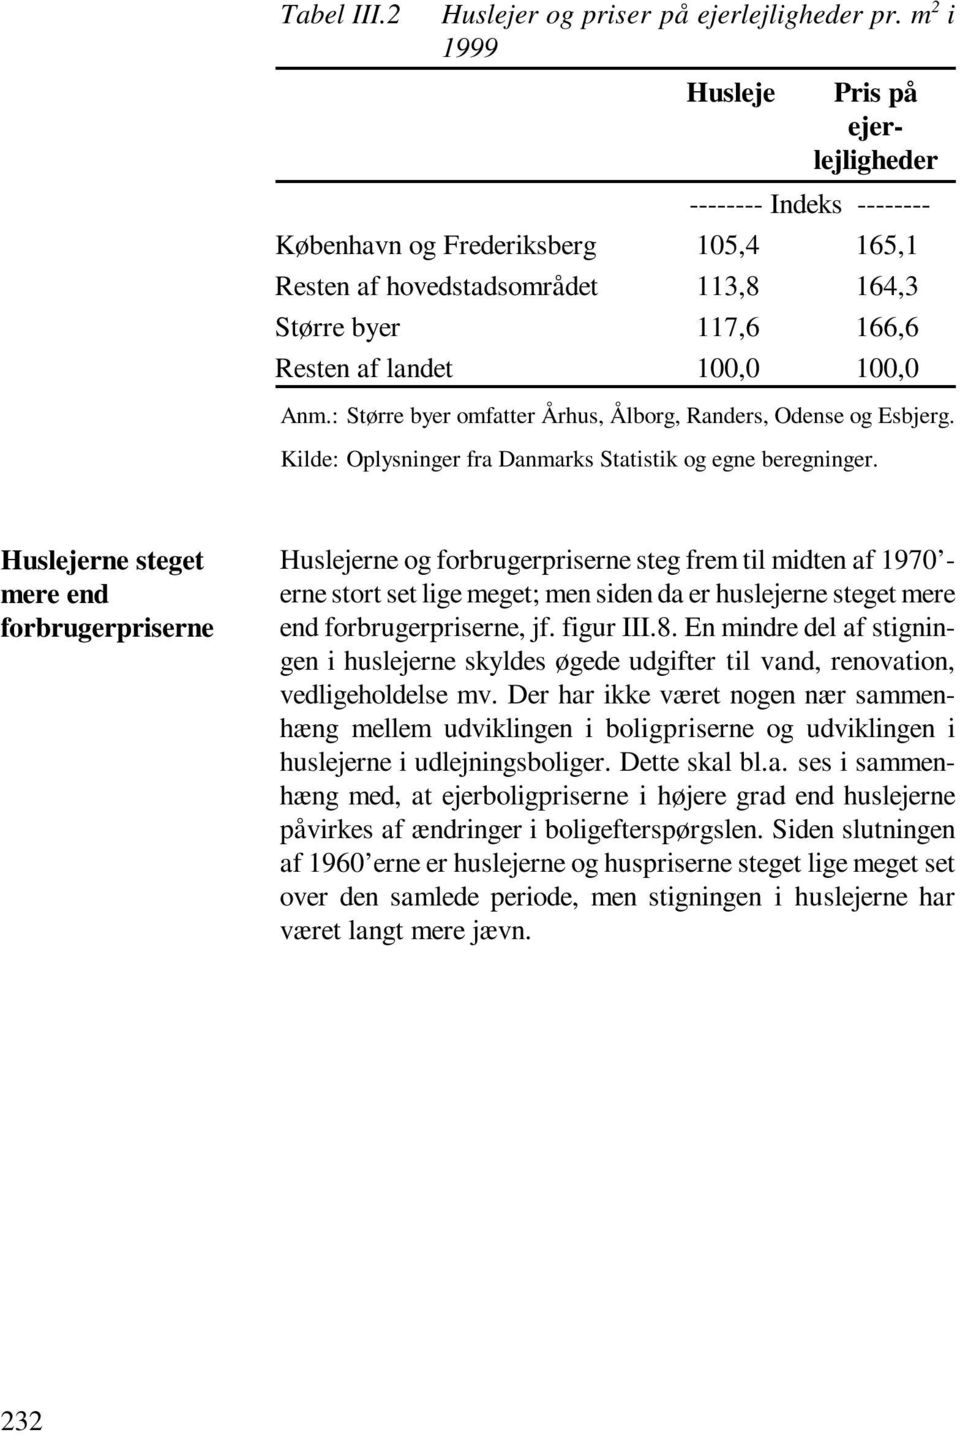 Anm.: Større byer omfatter Århus, Ålborg, Randers, Odense og Esbjerg. Kilde: Oplysninger fra Danmarks Statistik og egne beregninger.